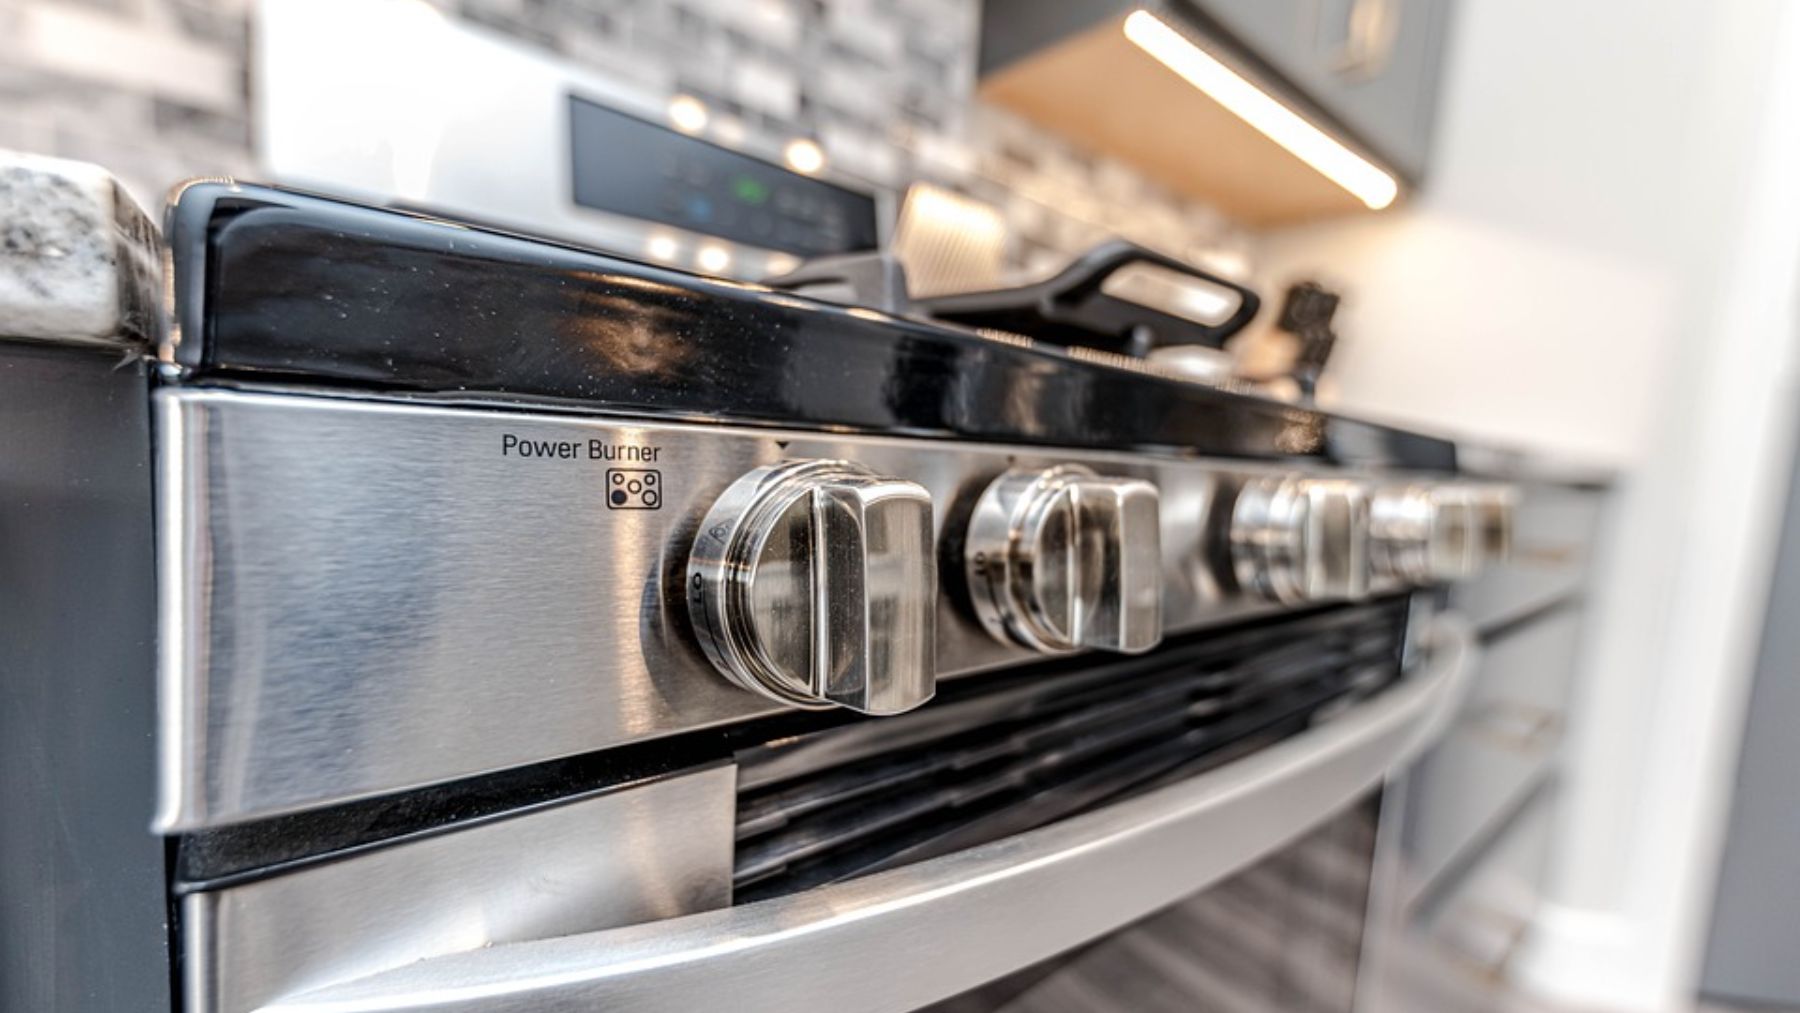 ¿Utilizas a menudo el horno? Los trucos para ahorrar energía